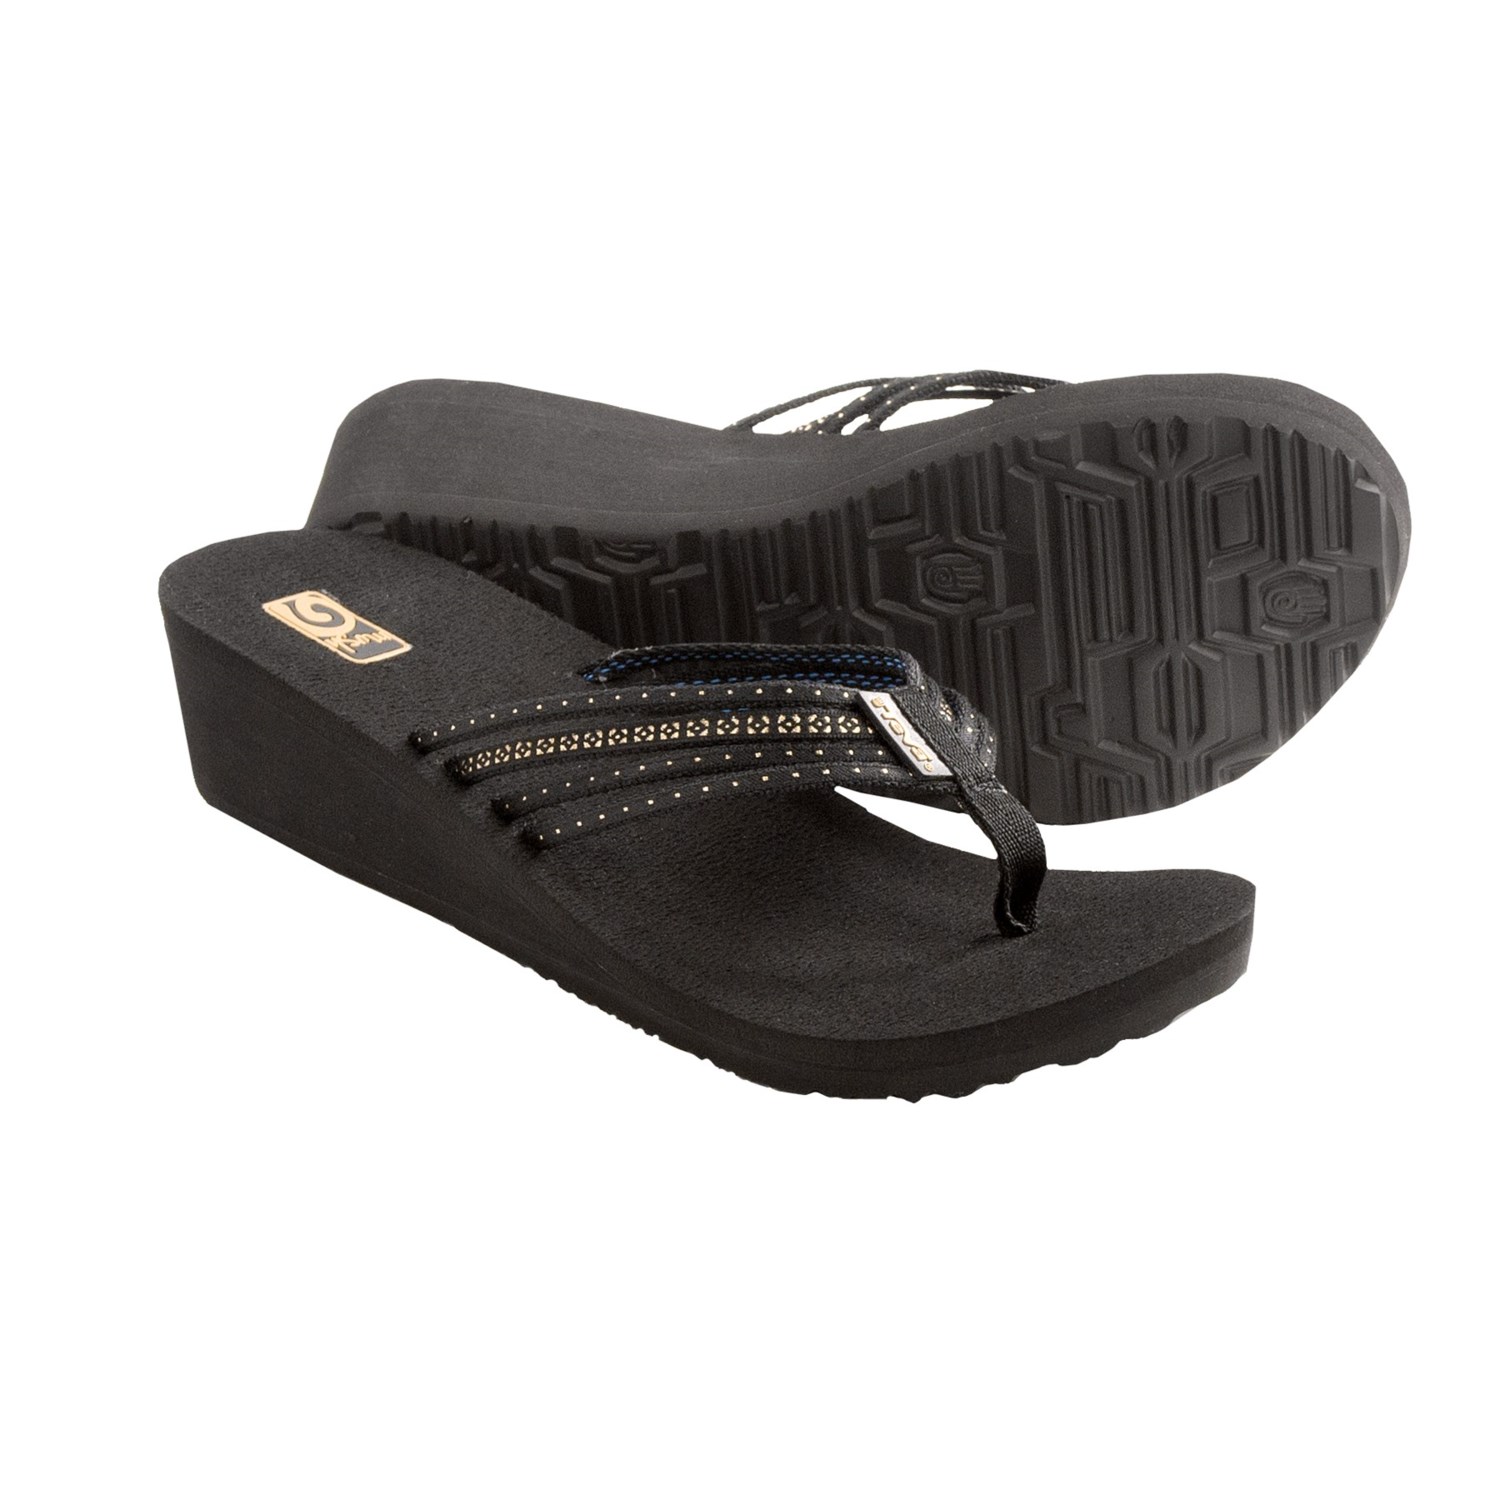 Teva Mush Adapto Wedge Sandals (For Women) in Studded Black